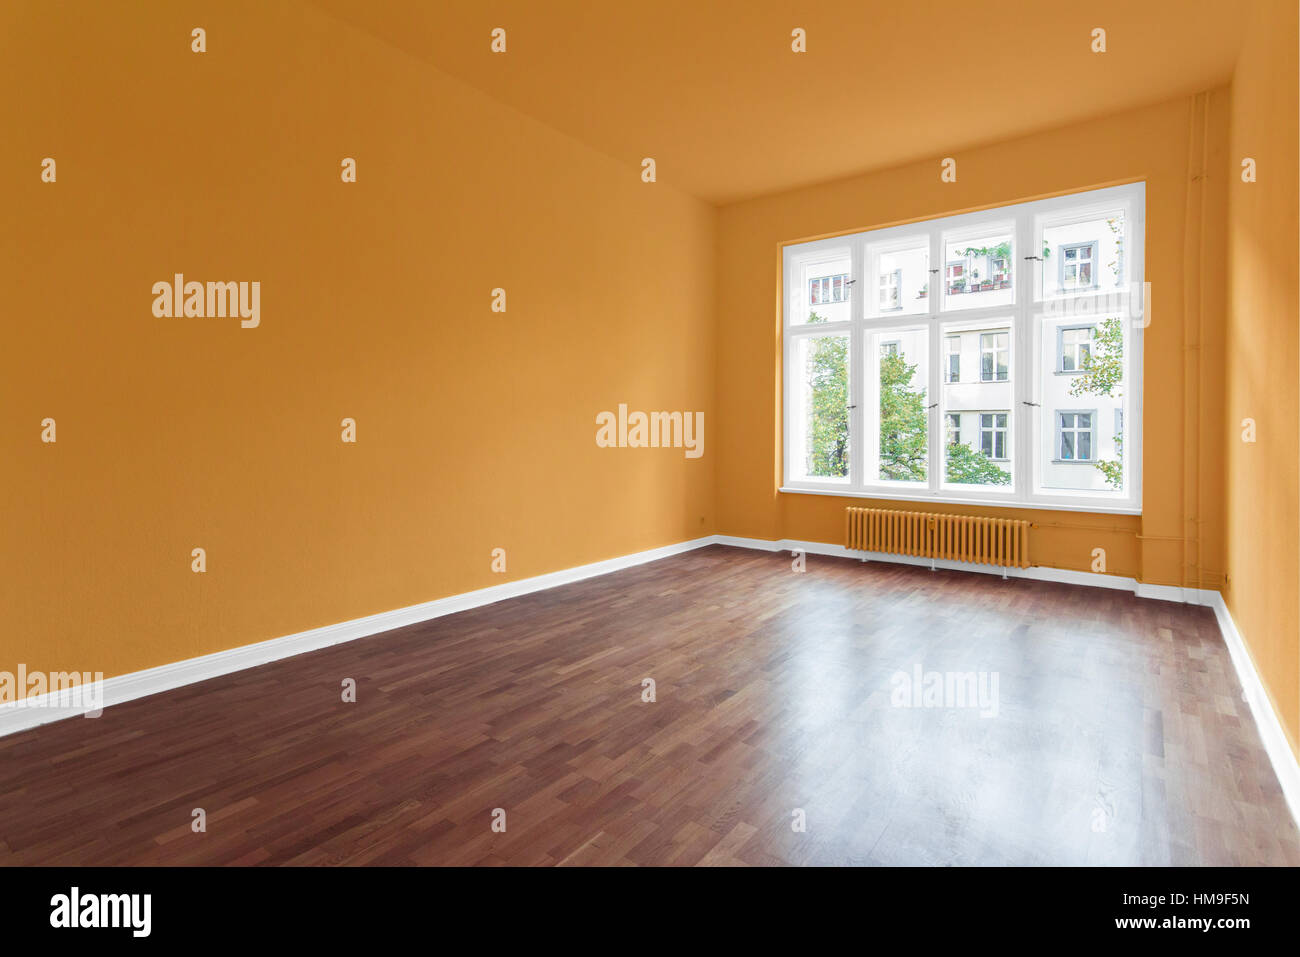 Salle vide avec des murs orange et plancher en bois Banque D'Images